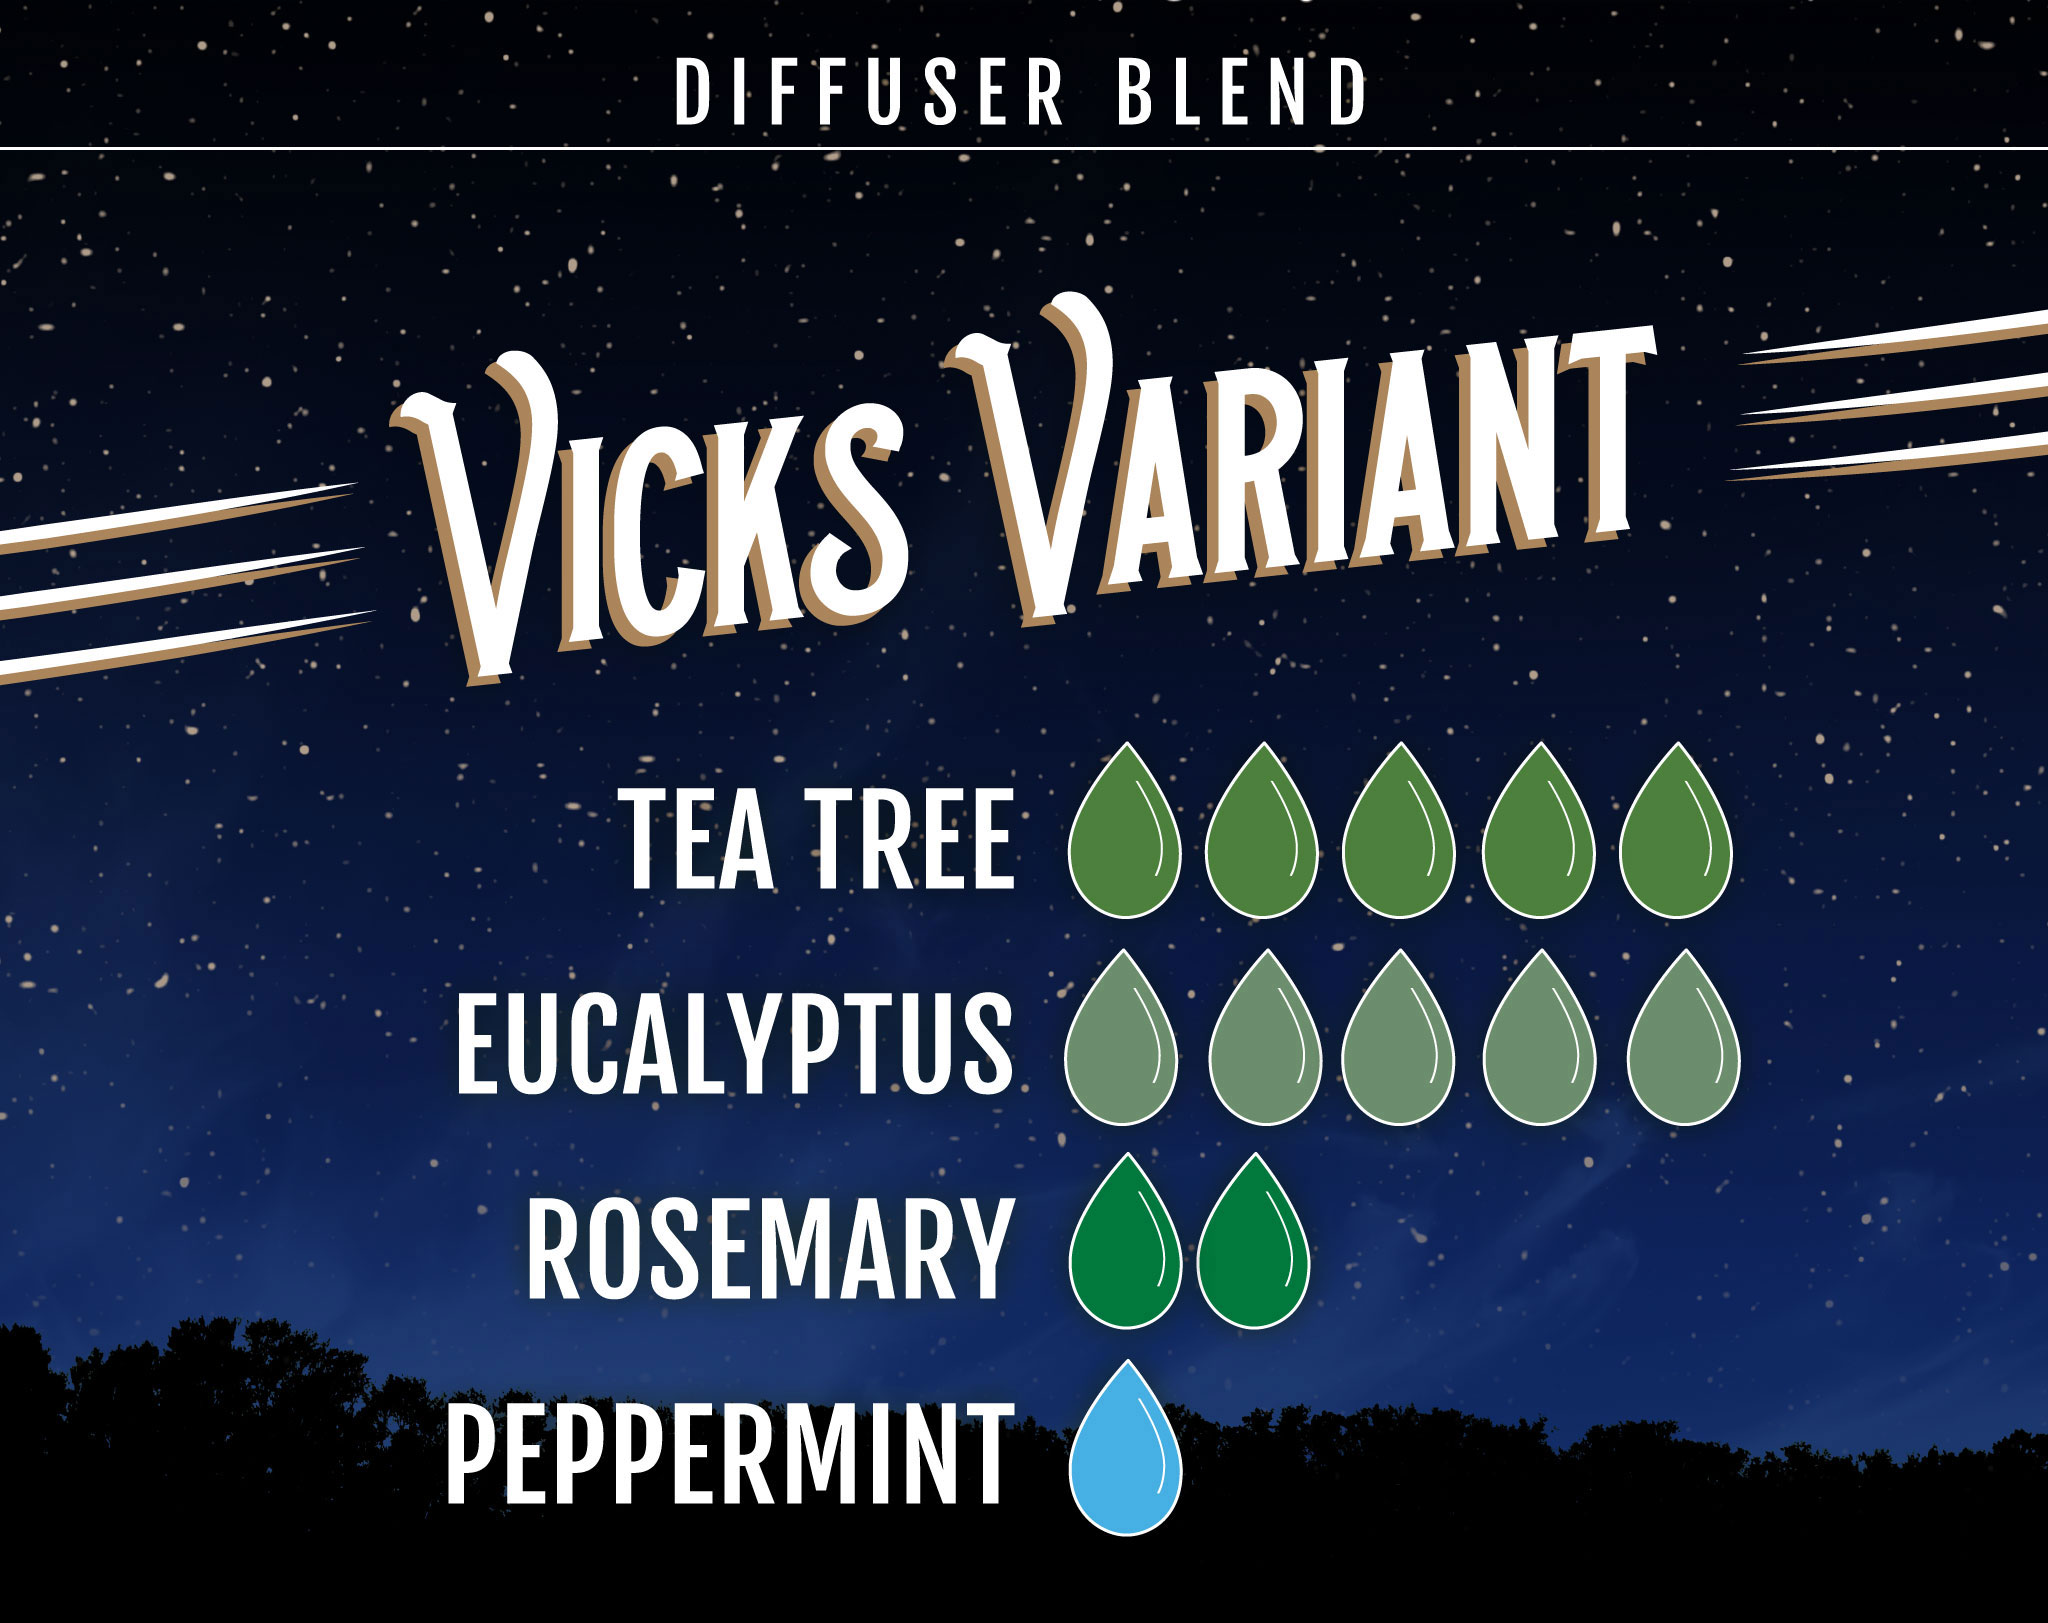 tea Tree Essential Oil Diffuser Blend Vicks Variant - 5 drops Tea Tree 5 drops Eucalyptus 2 drops Rosemary 1 drop Peppermint